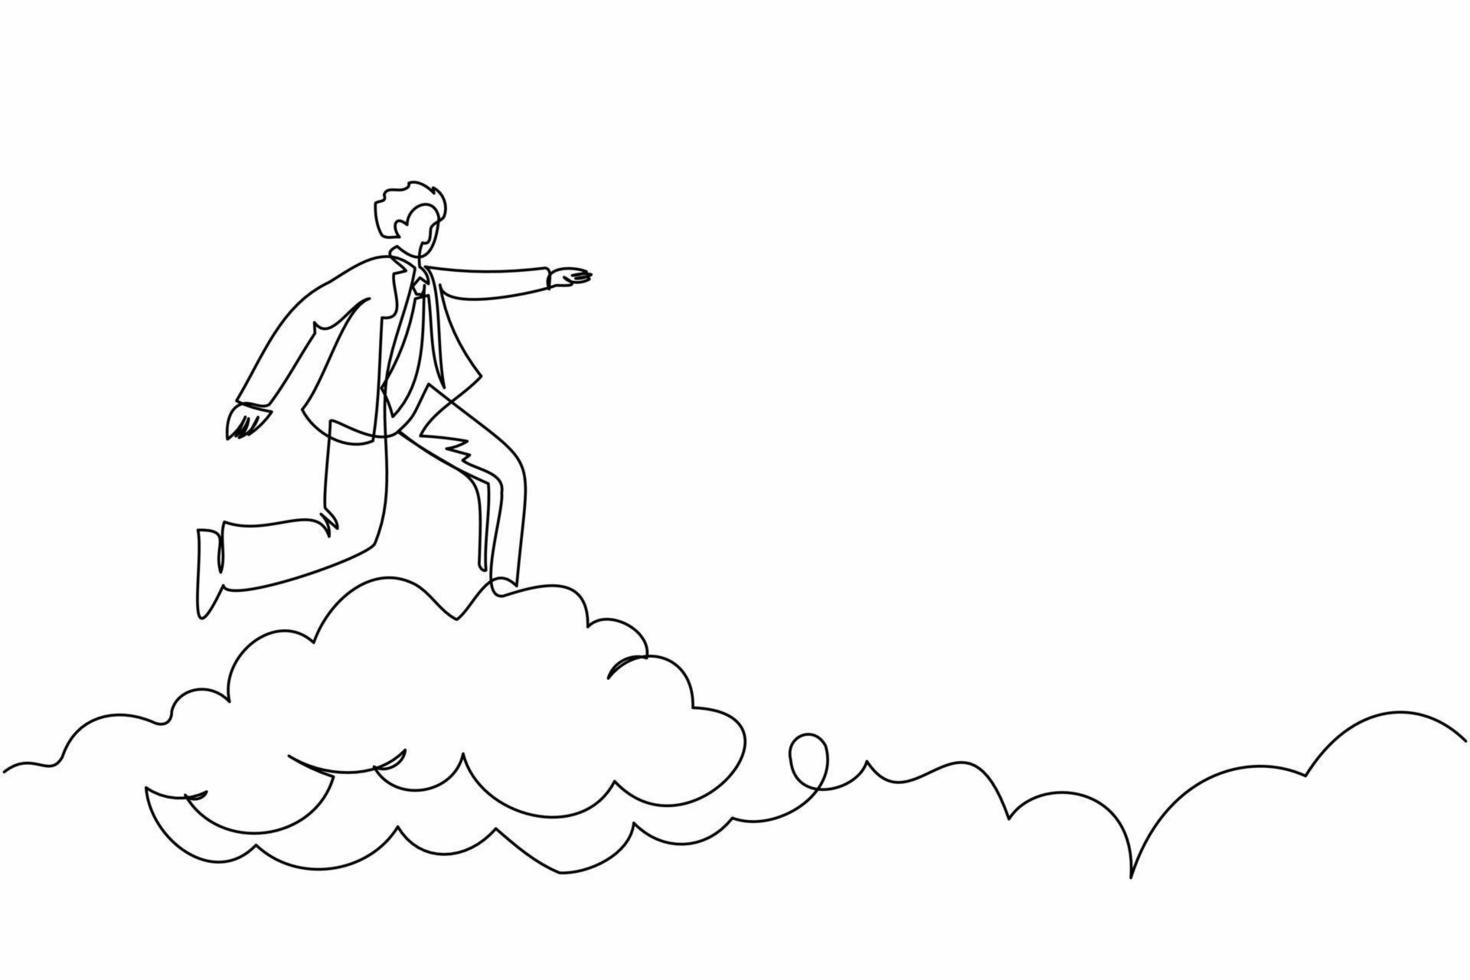 un solo hombre de negocios de dibujo de línea continua montando una nube en el cielo, apuntando hacia adelante, ir al futuro, concepto de negocio. gerente en la nube camino al éxito. ilustración de vector de diseño gráfico de dibujo de una línea